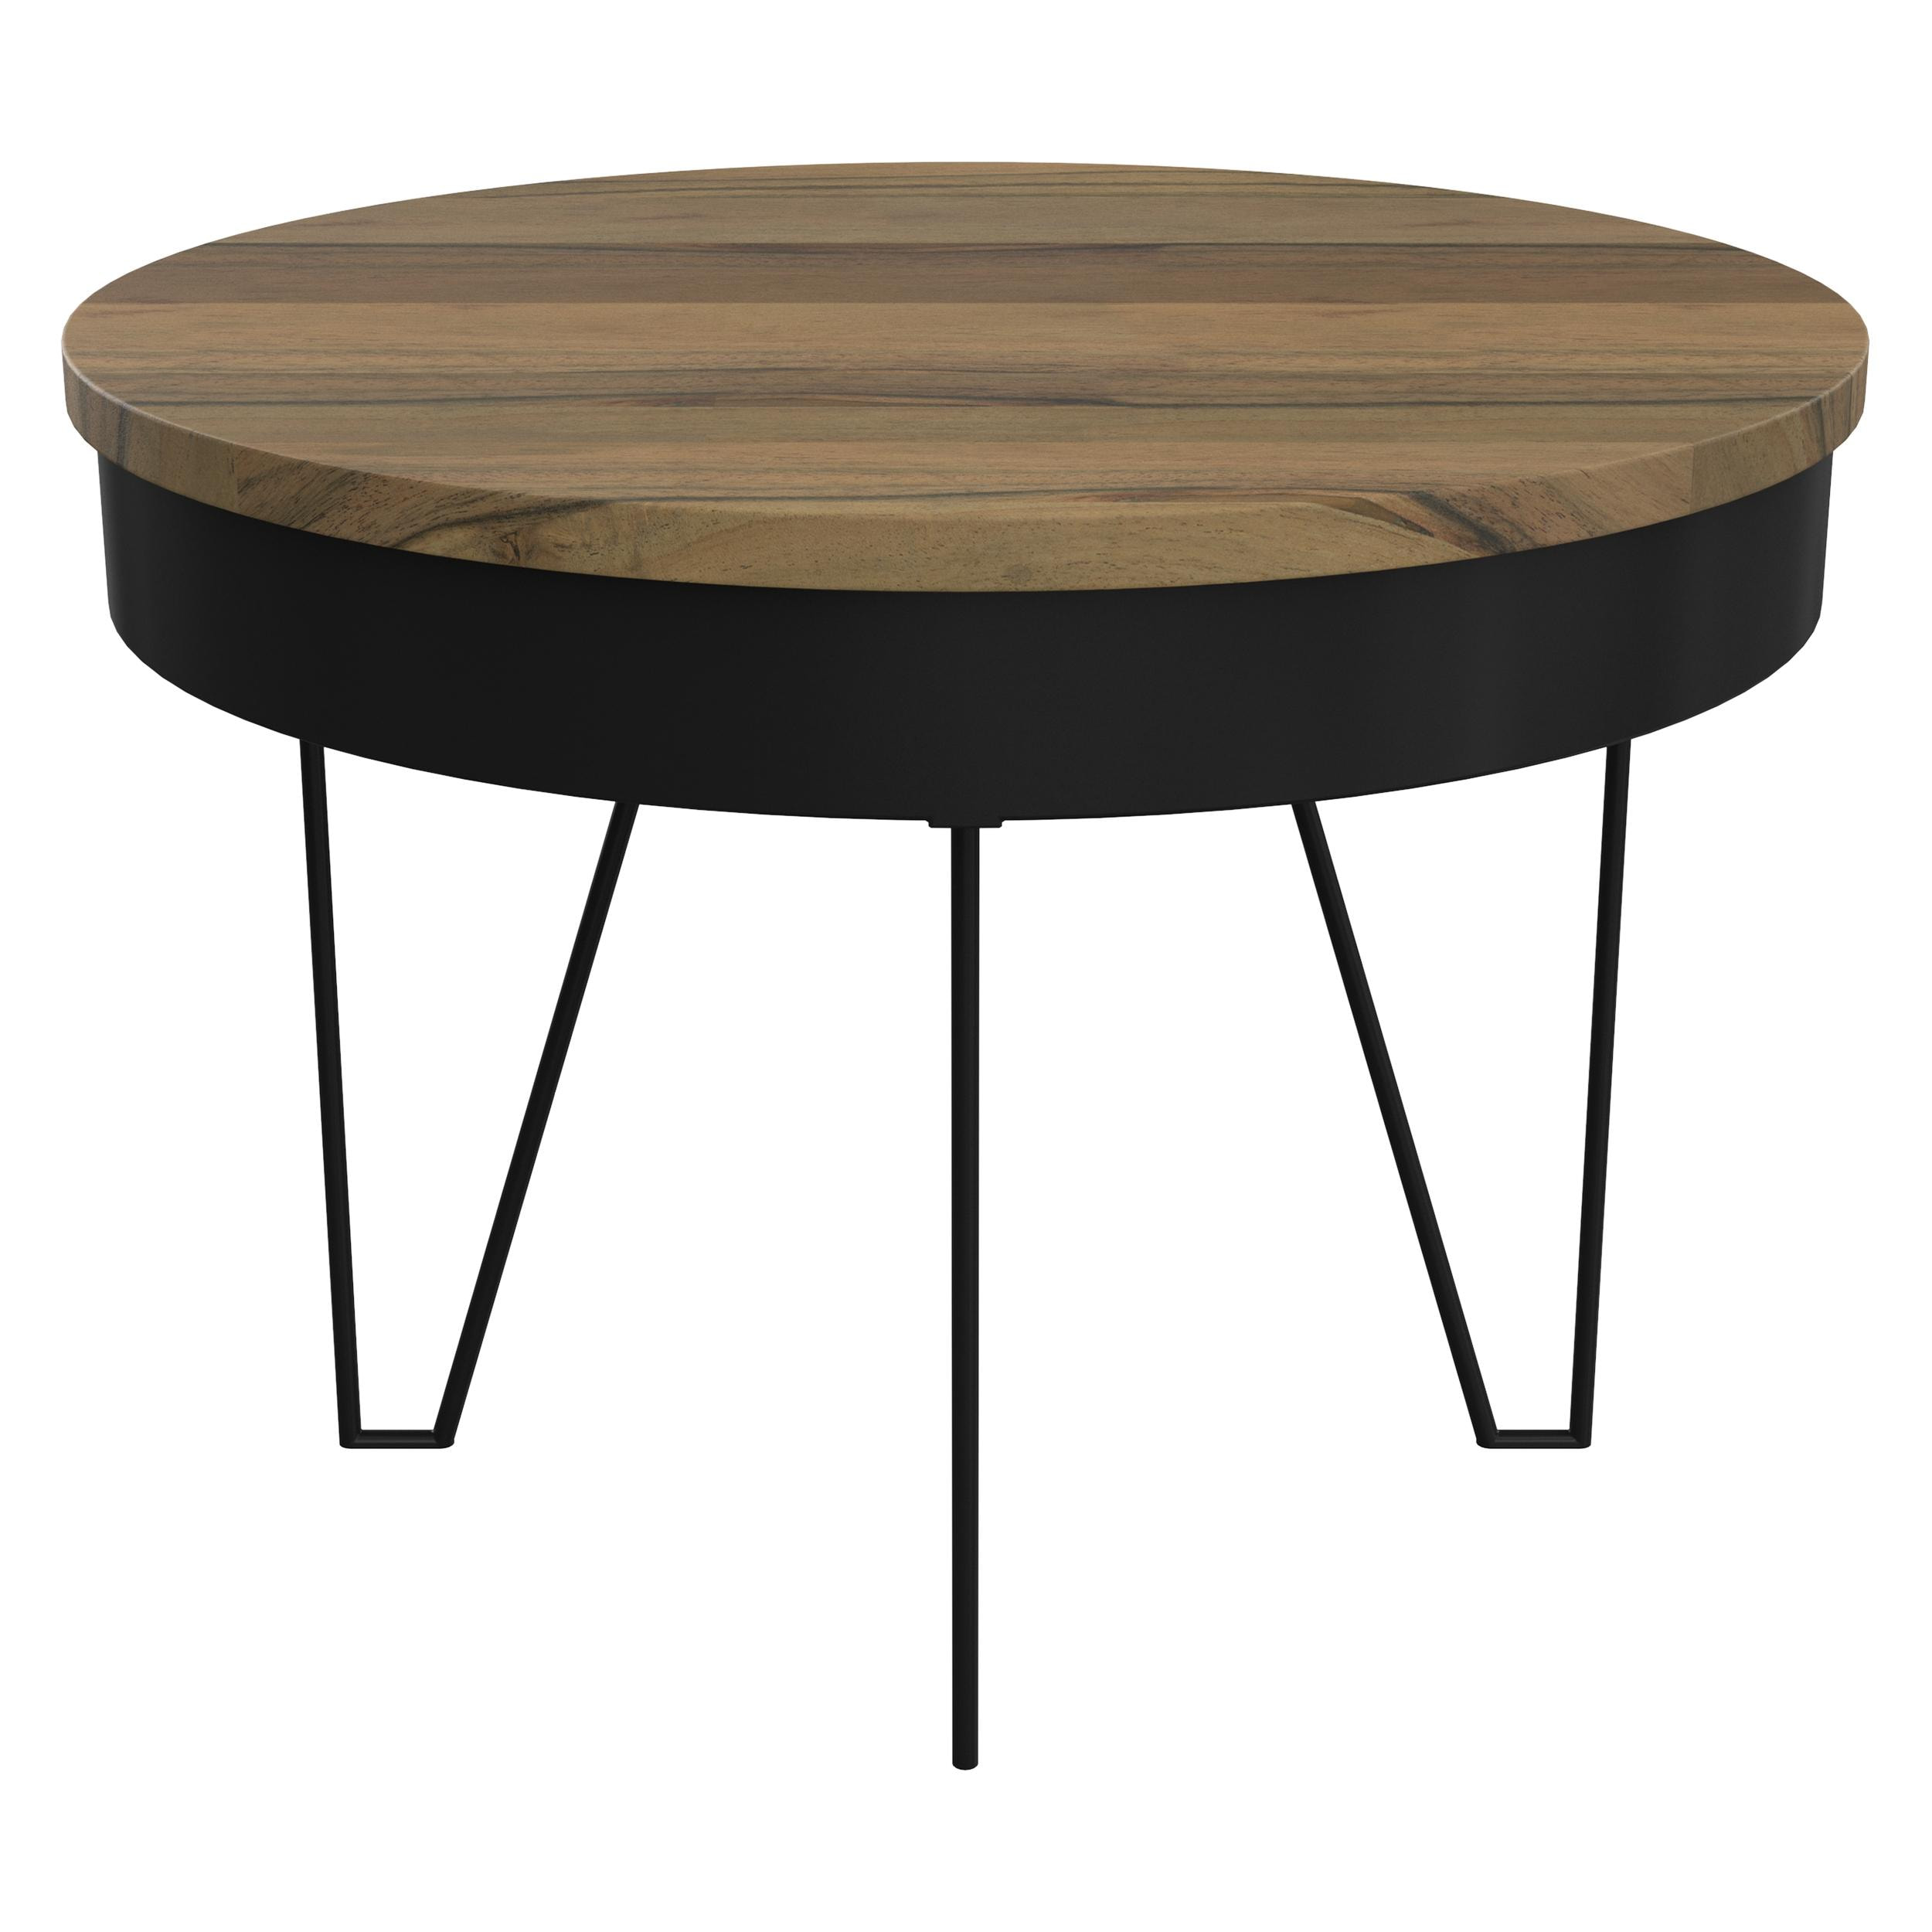 Table basse ronde Kiara en bois et métal D60 cm